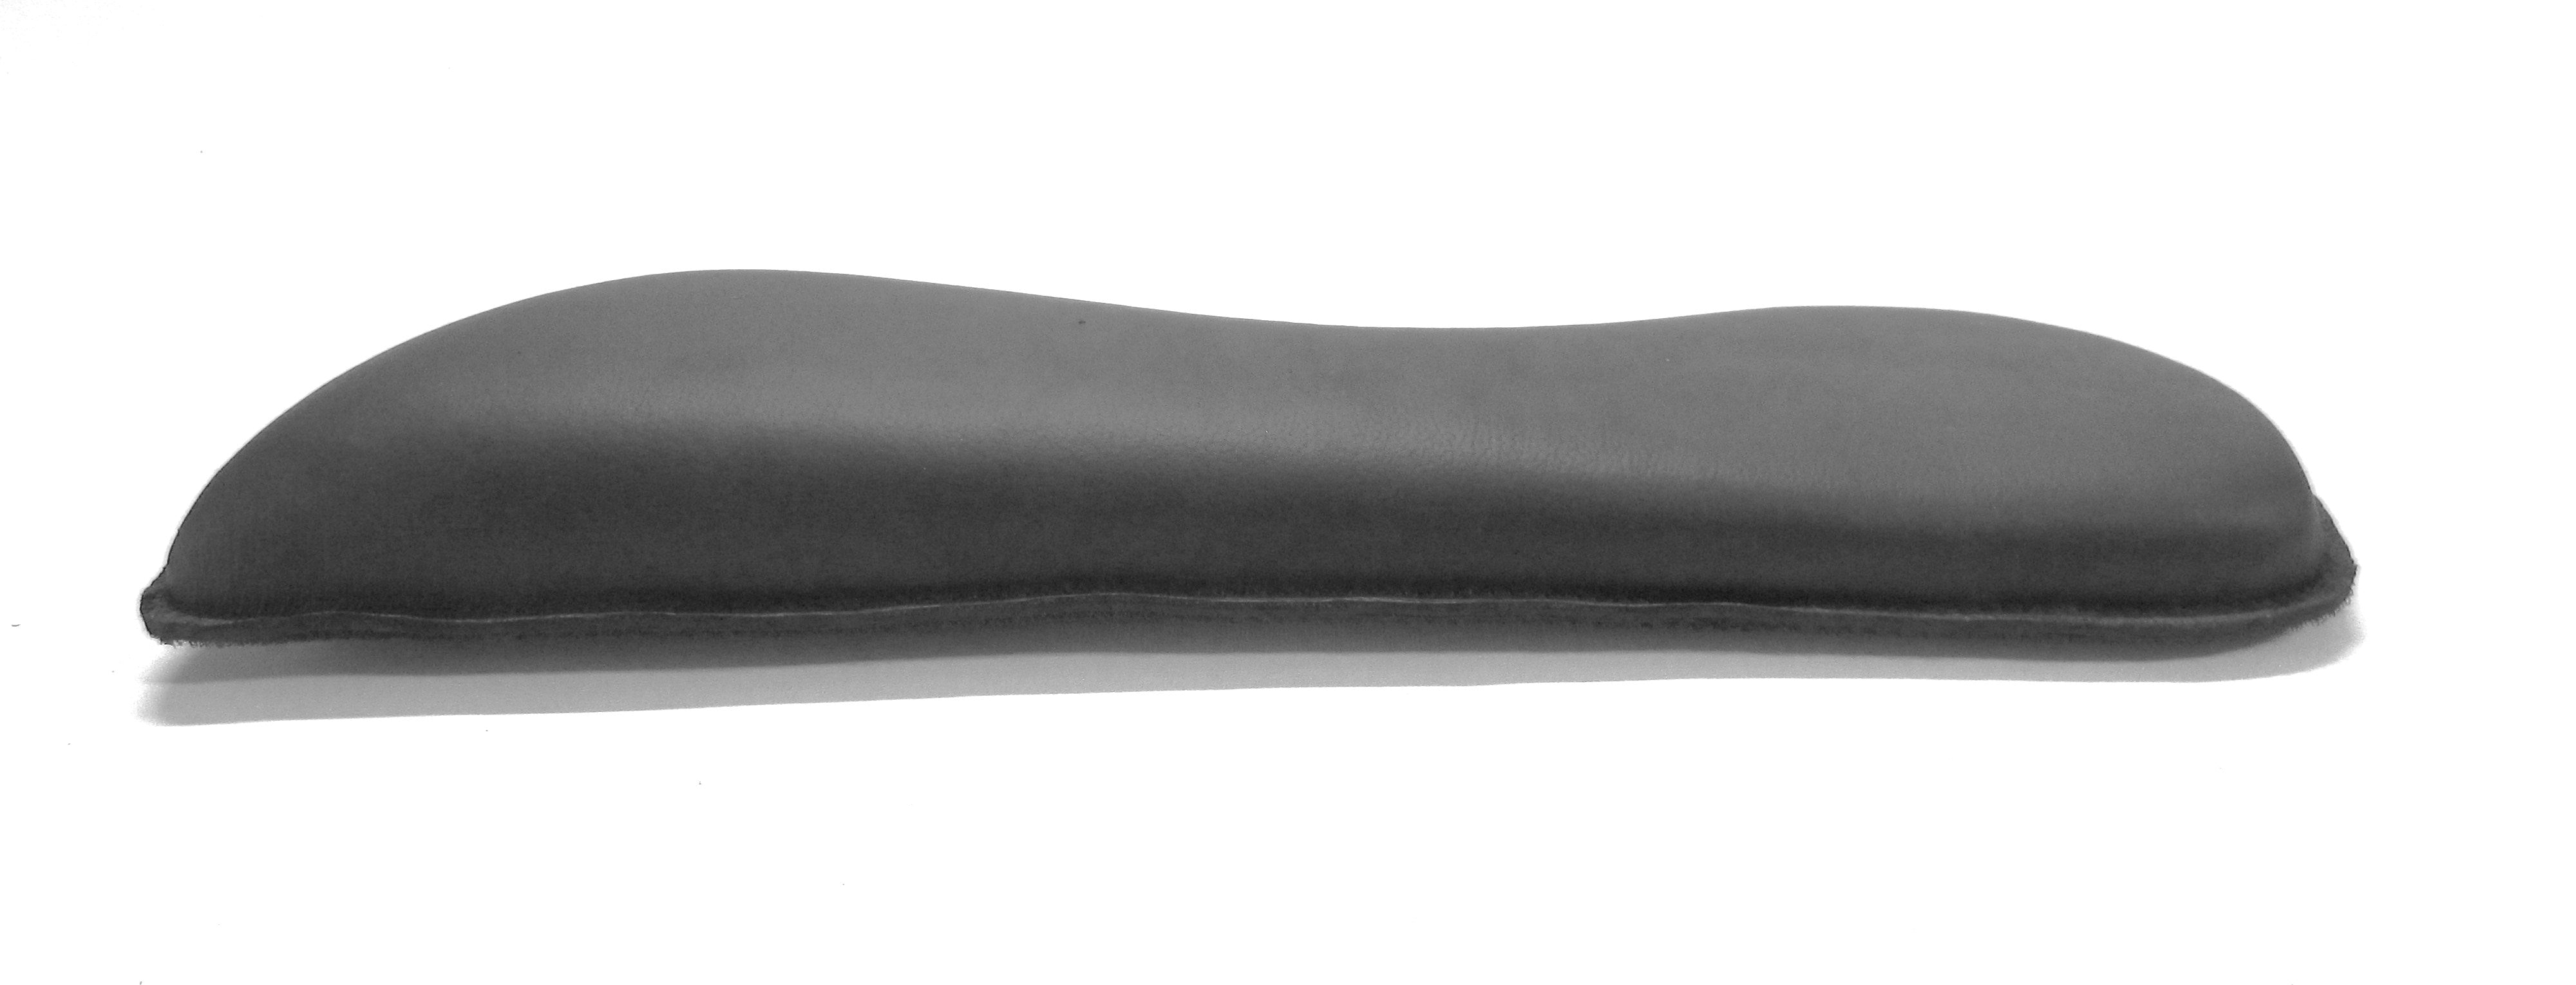 3-4-5 cm wedge shape Velcro cushion standard shape; Saddle cushion/Velcro panels